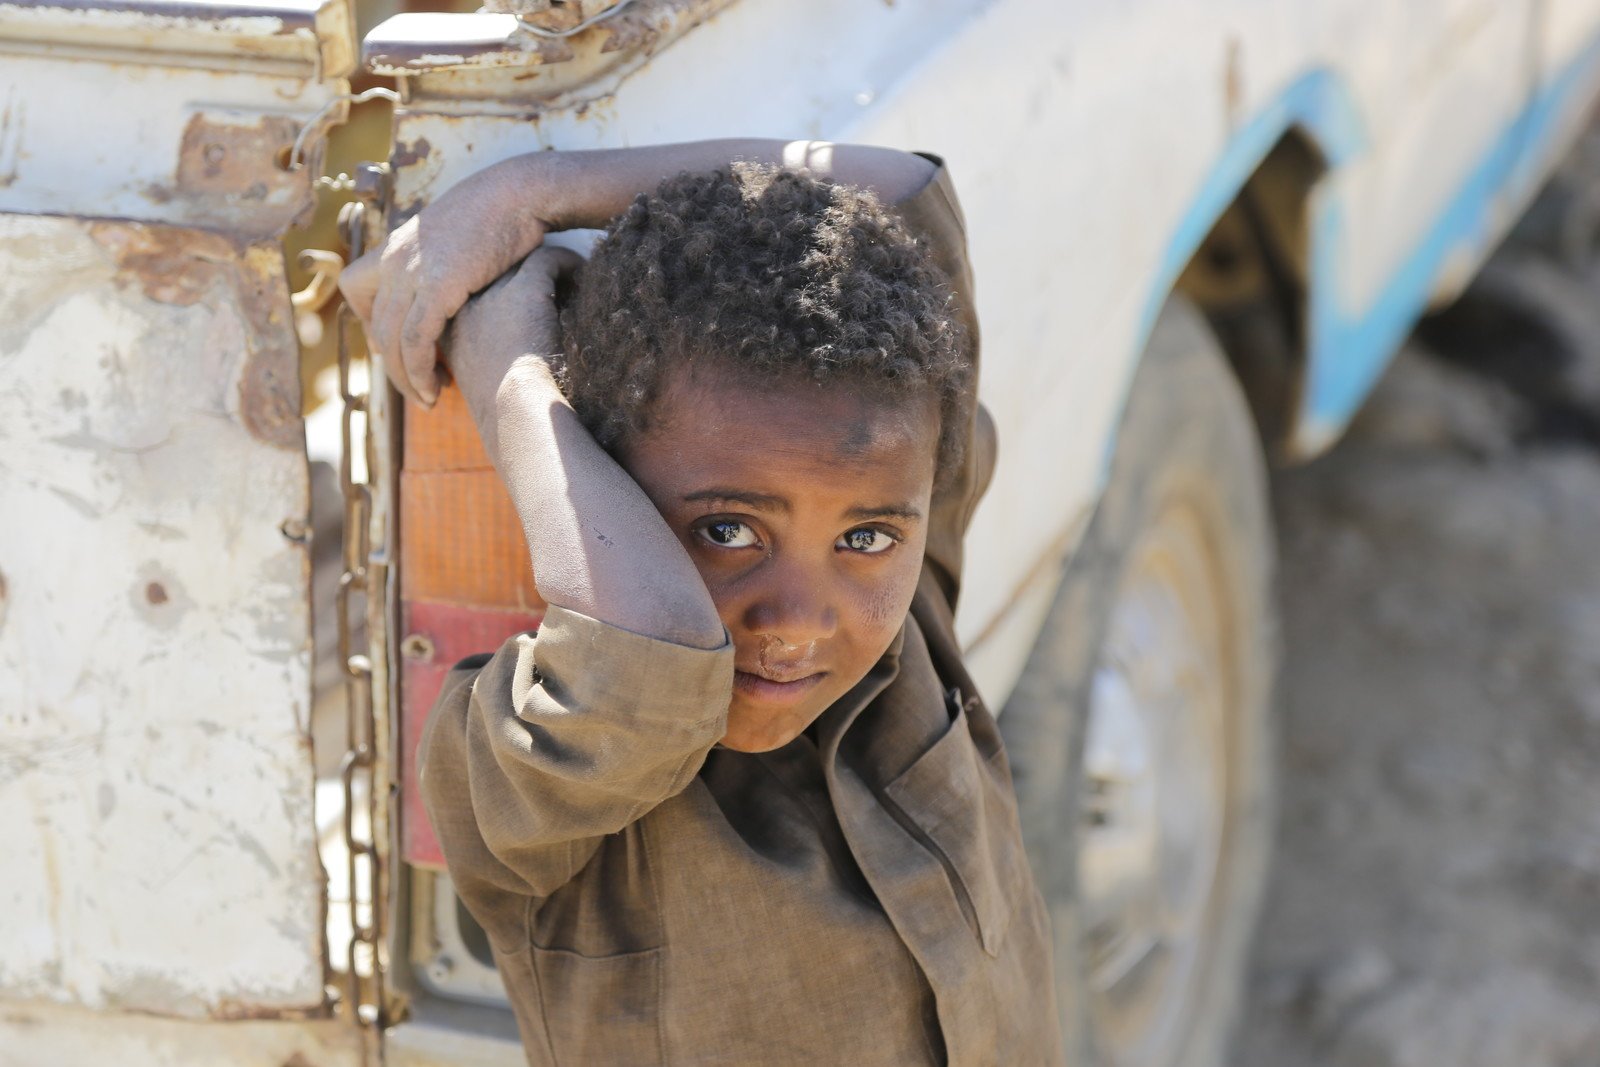 8岁的Bader(为保护儿童，名字经更改)因战火和饥饿，被迫和家人离开Sa'ash地区，及后栖身于阿姆兰省(Amran)胡特国内流离失所者营地(Huth IDP camp)。乐施会自2015年年底以来一直在营地提供人道援助，包括提供能安全饮用的食水。  乐施会在阿姆兰省的卫生推广以及公共卫生工作共支援了53,000人。